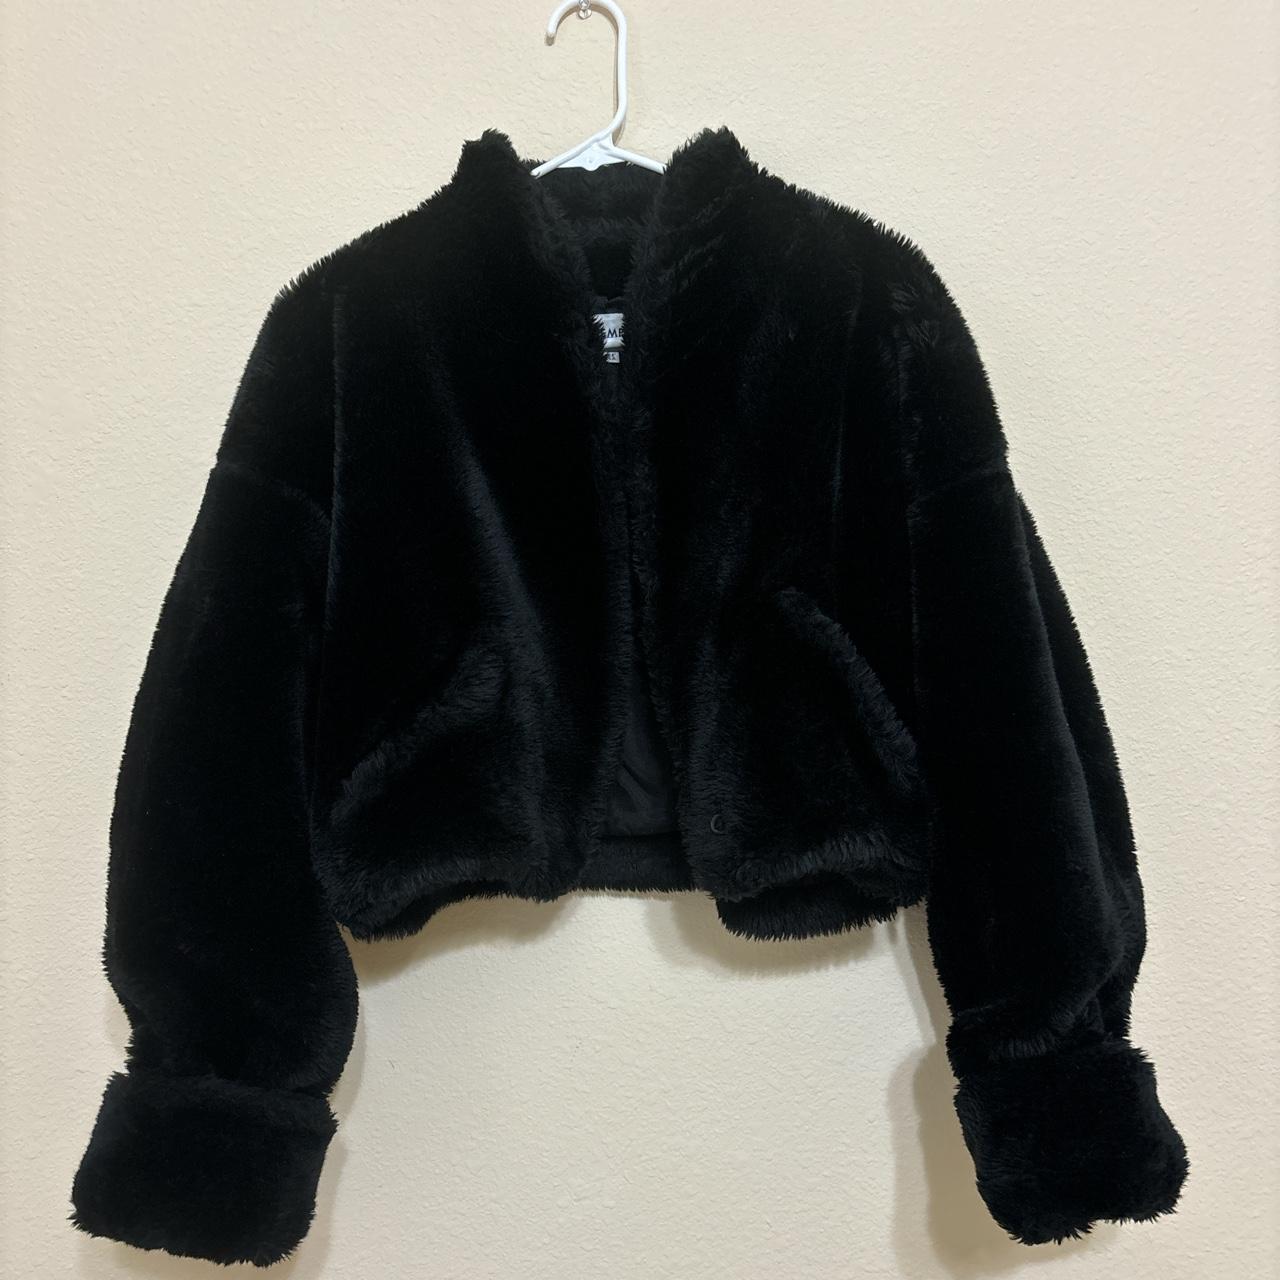 Vintage Contempo Casuals Black Fur Jacket with Pockets - Depop